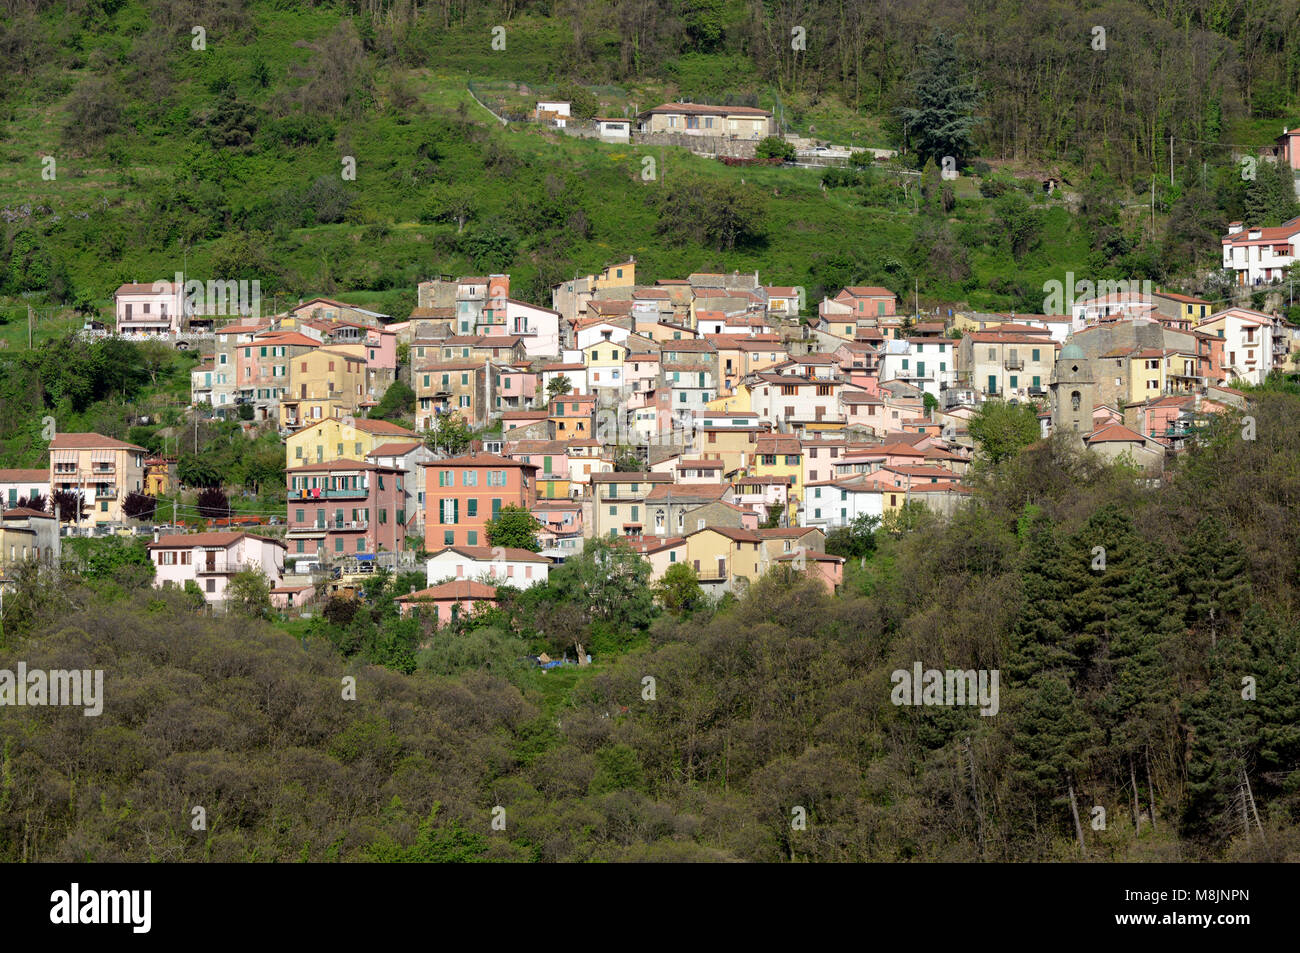 La pequeña aldea de Biassa, en el Parque Nacional de Cinque Terre, Italia Foto de stock